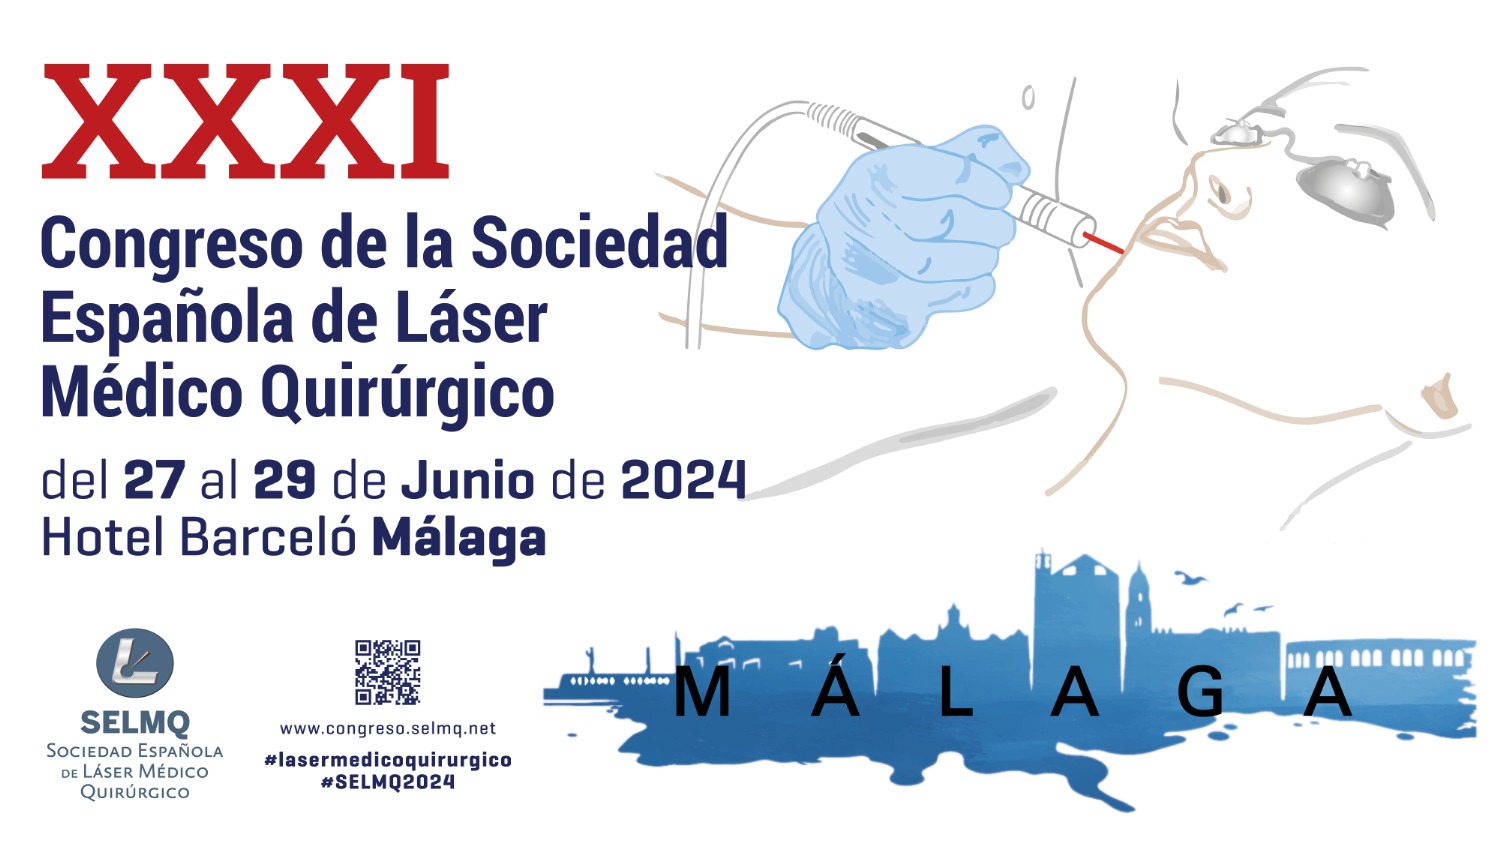 XXXI Congreso de la Sociedad Española de Láser Médico Quirúrgico